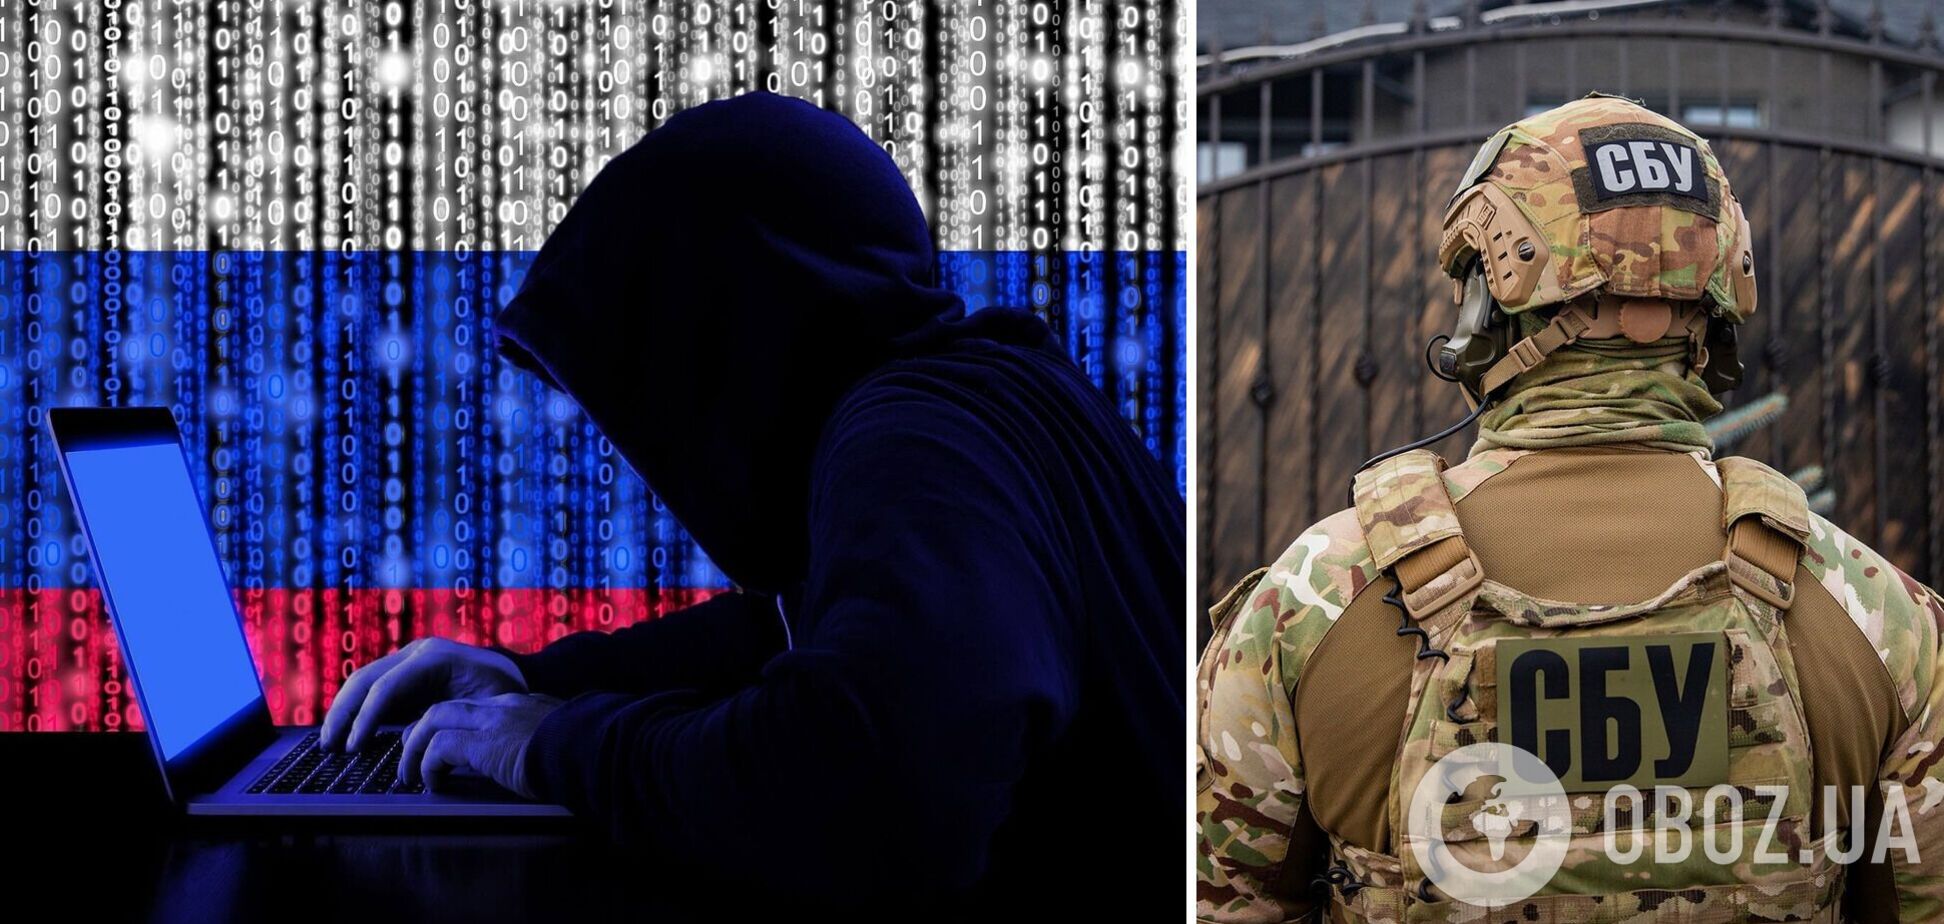 Хакеры из РФ вмешались в работу украинских онлайн-СМИ: преступников легко вычислили